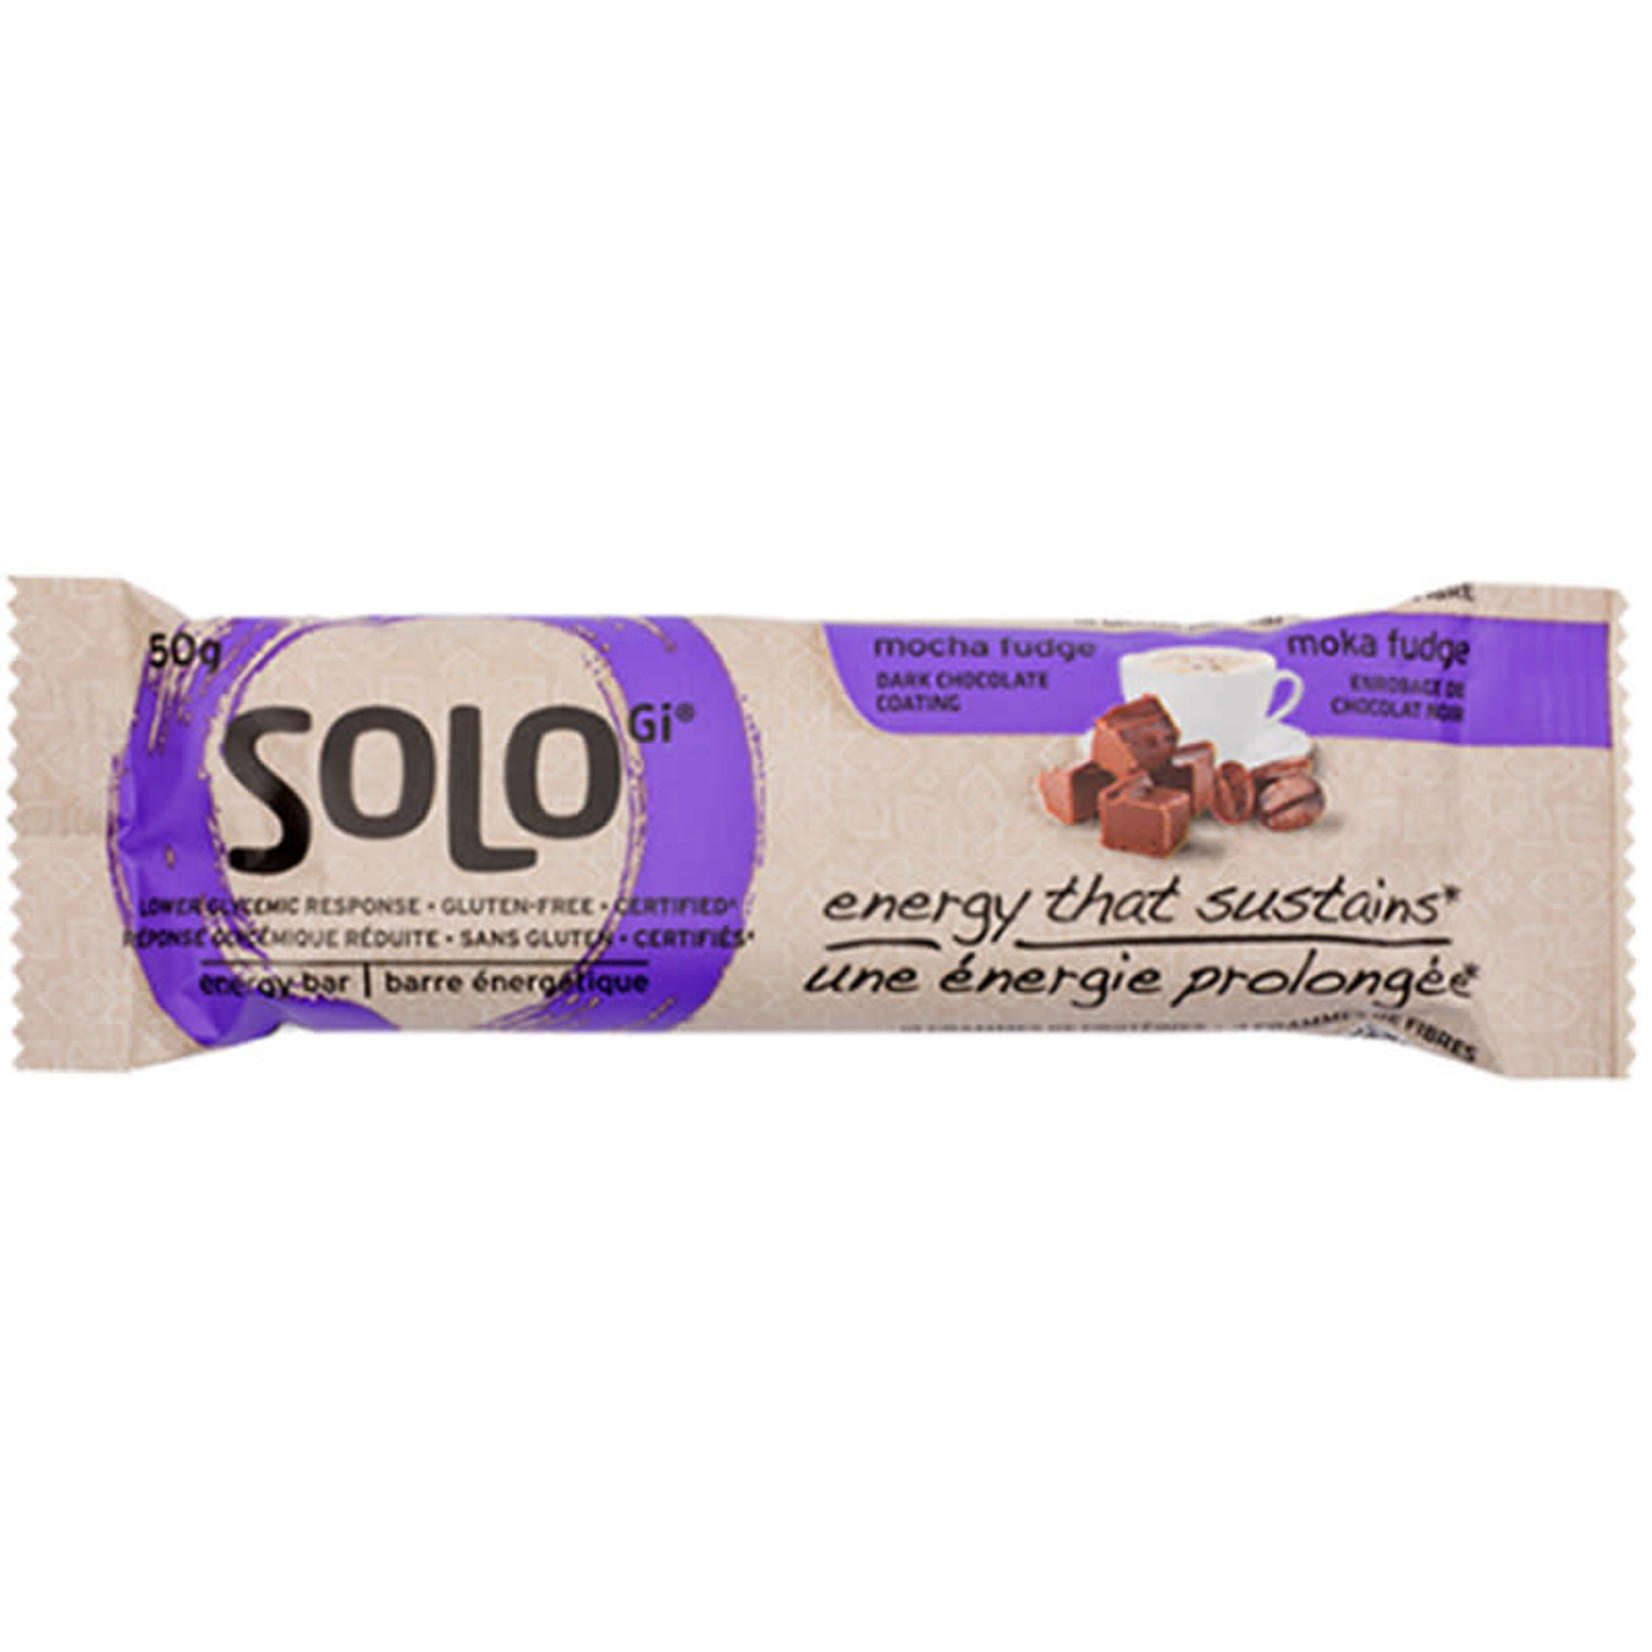 Solo Energy Bar Mocha Fudge Box of 12